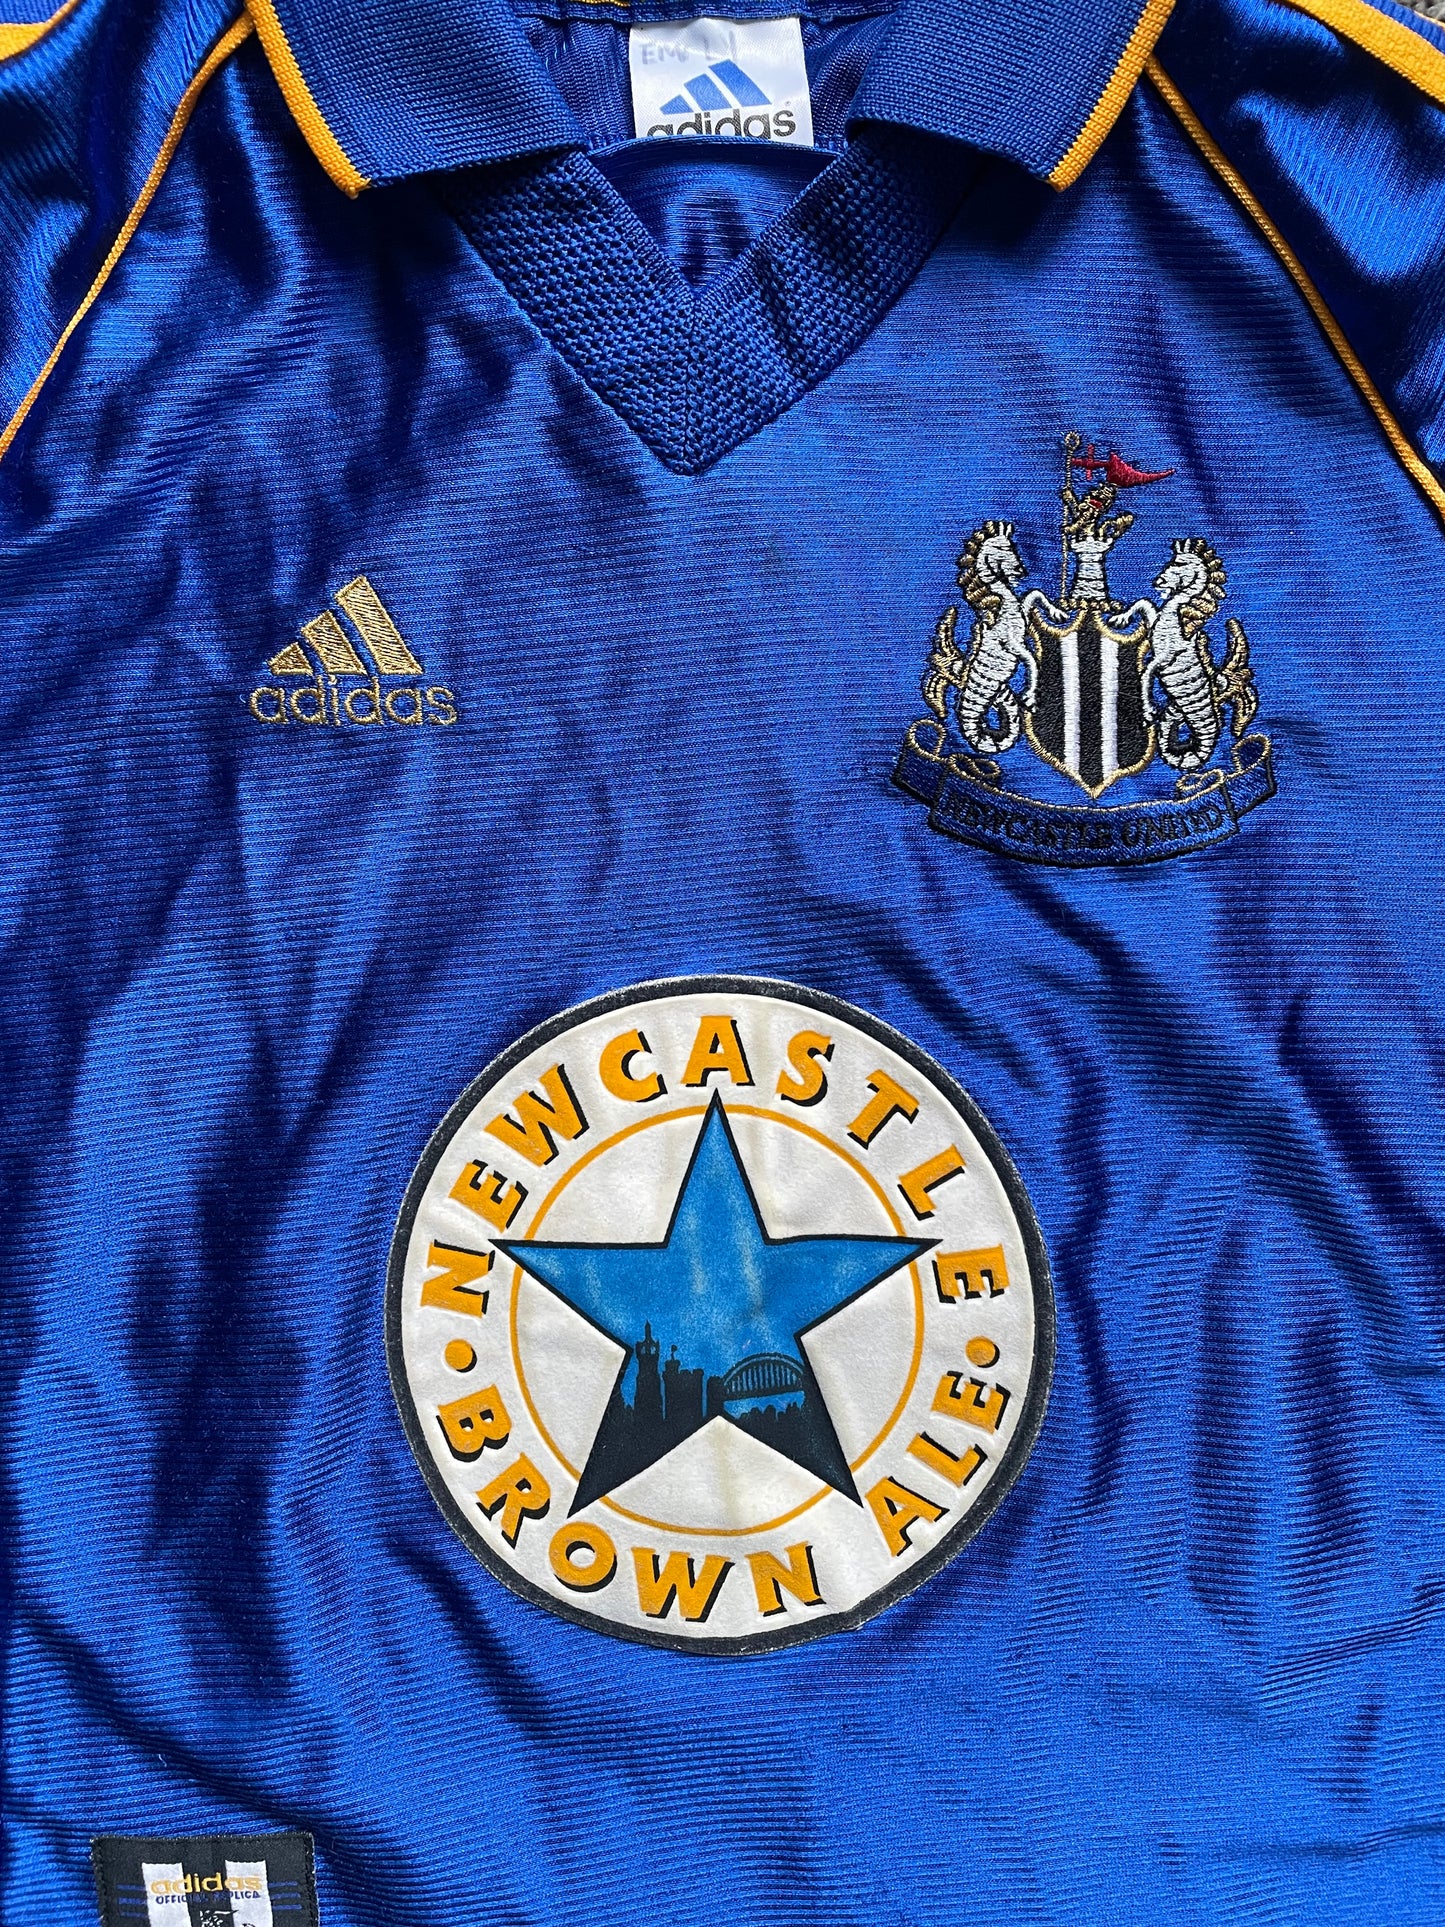 Newcastle 1998 Away Shirt (fair) Small Boys 128 8